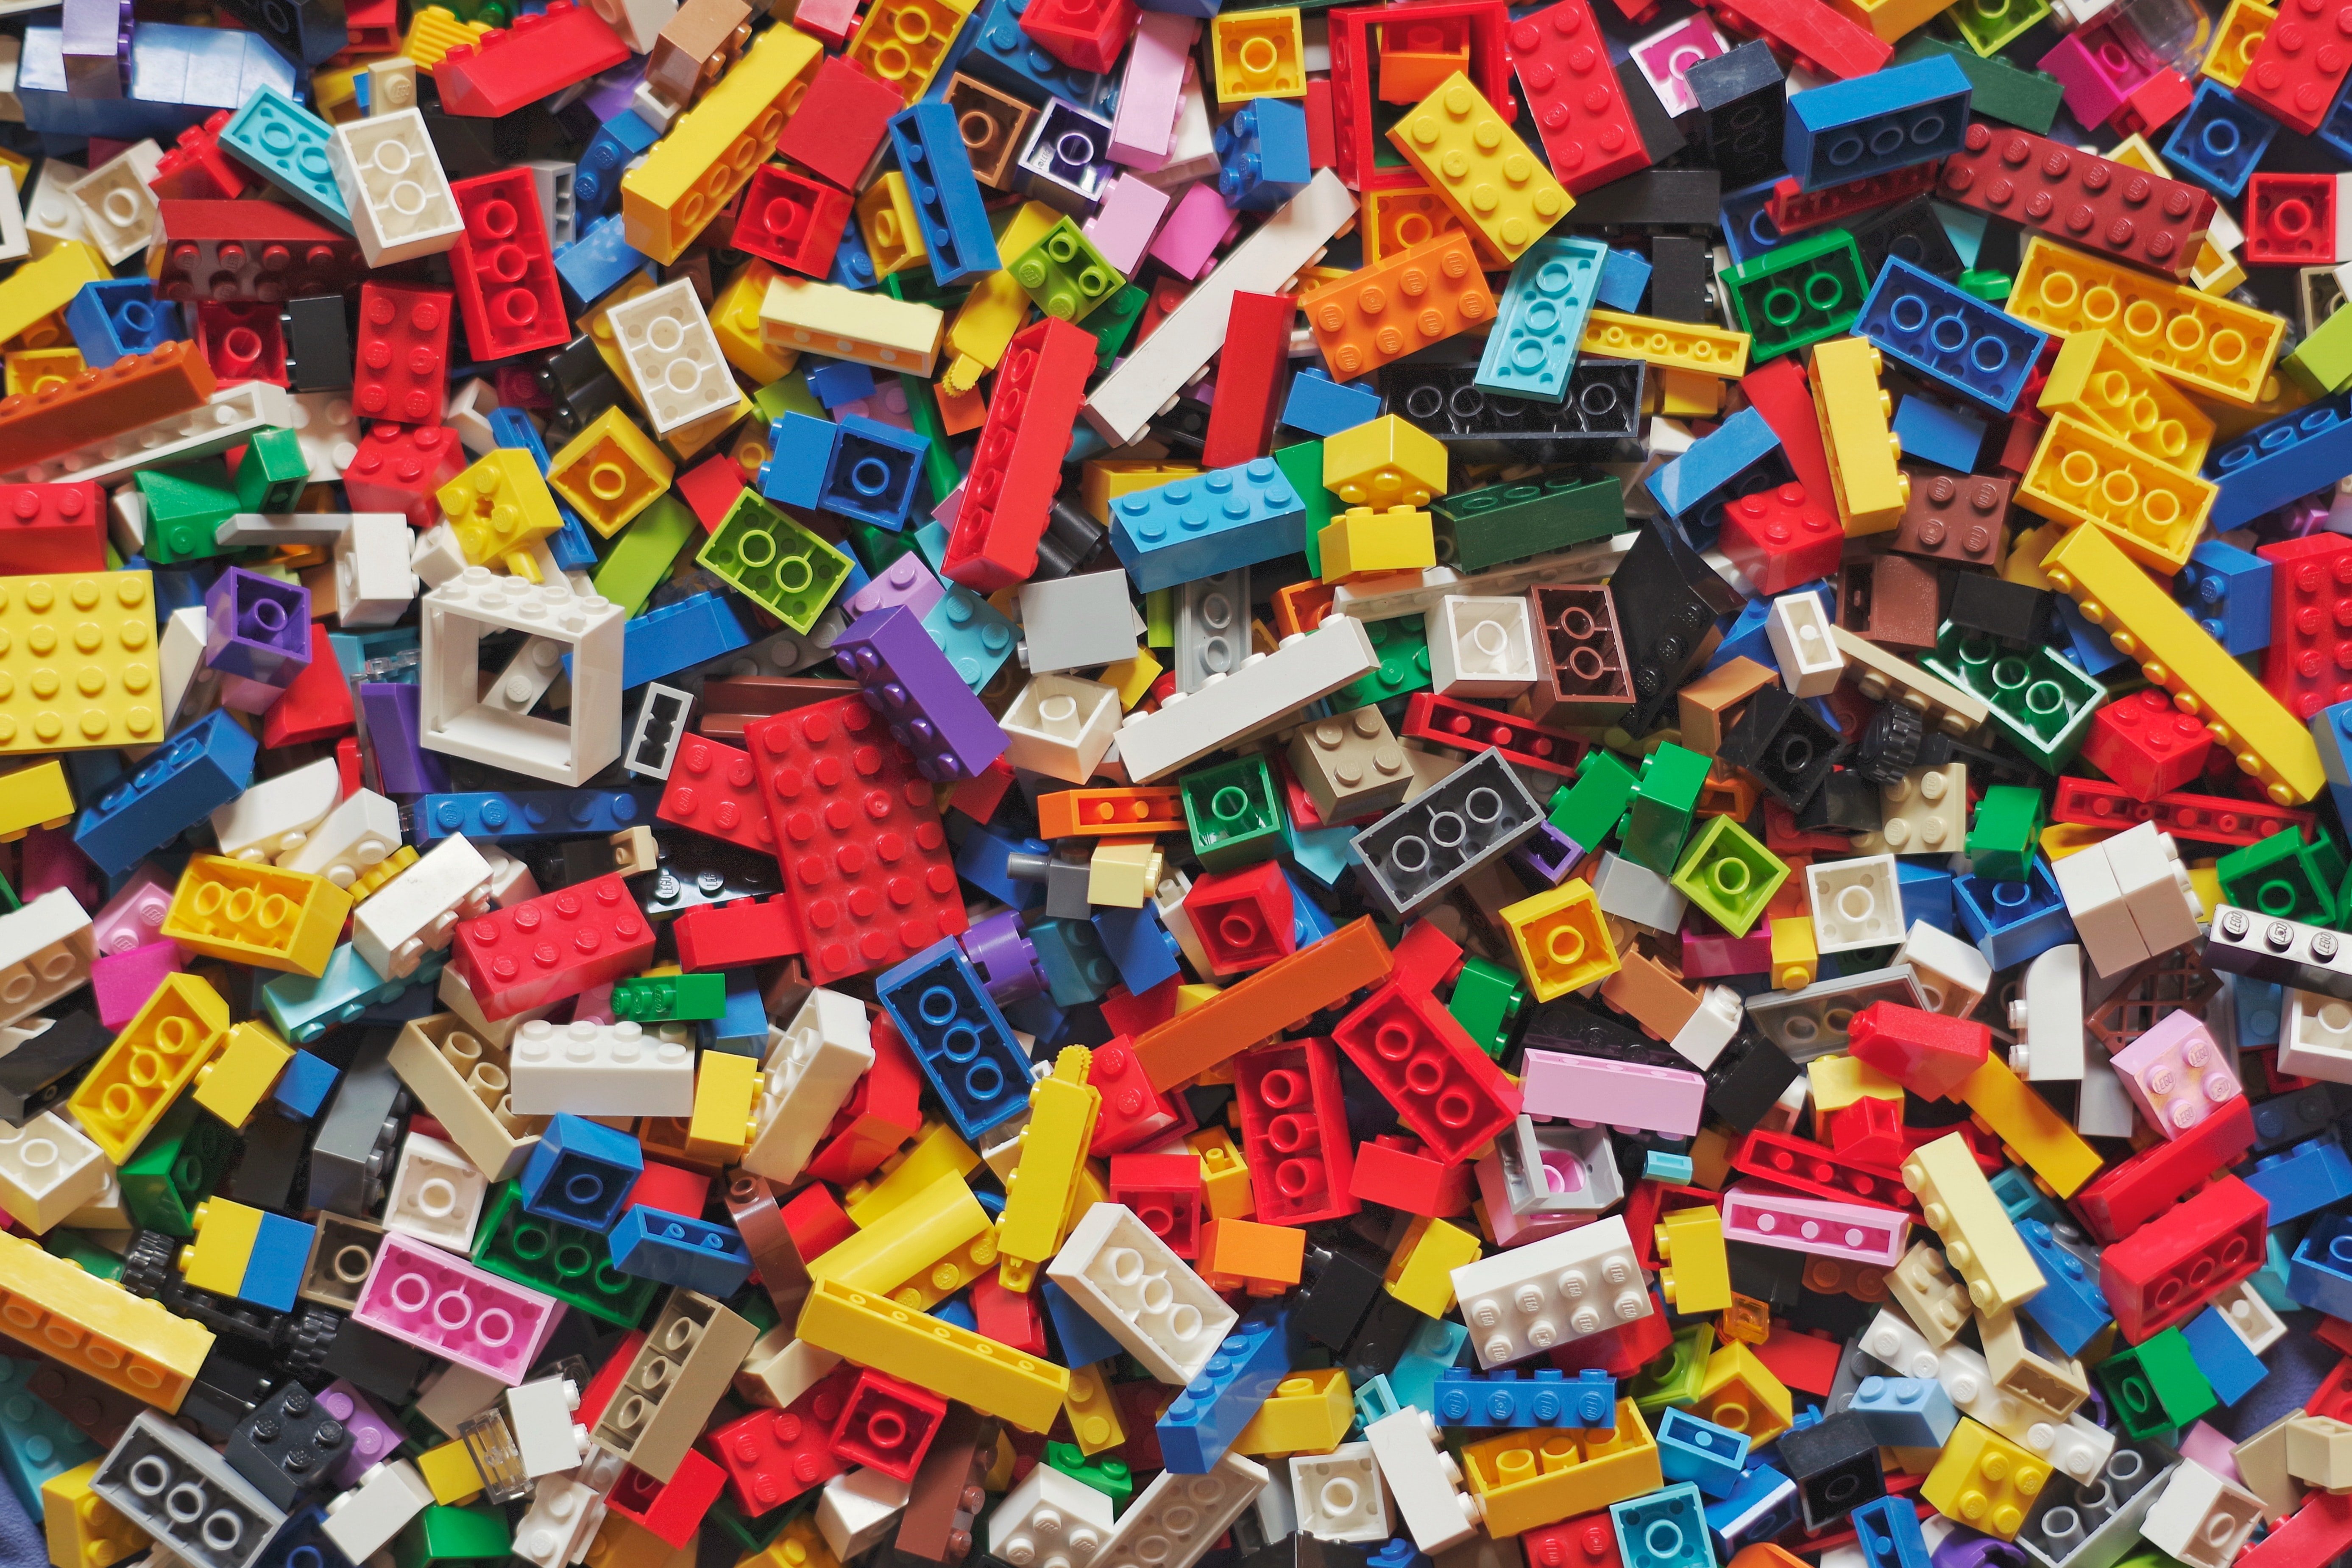 Lego canvia de plans: vol eliminar el biaix de gènere dels seus productes